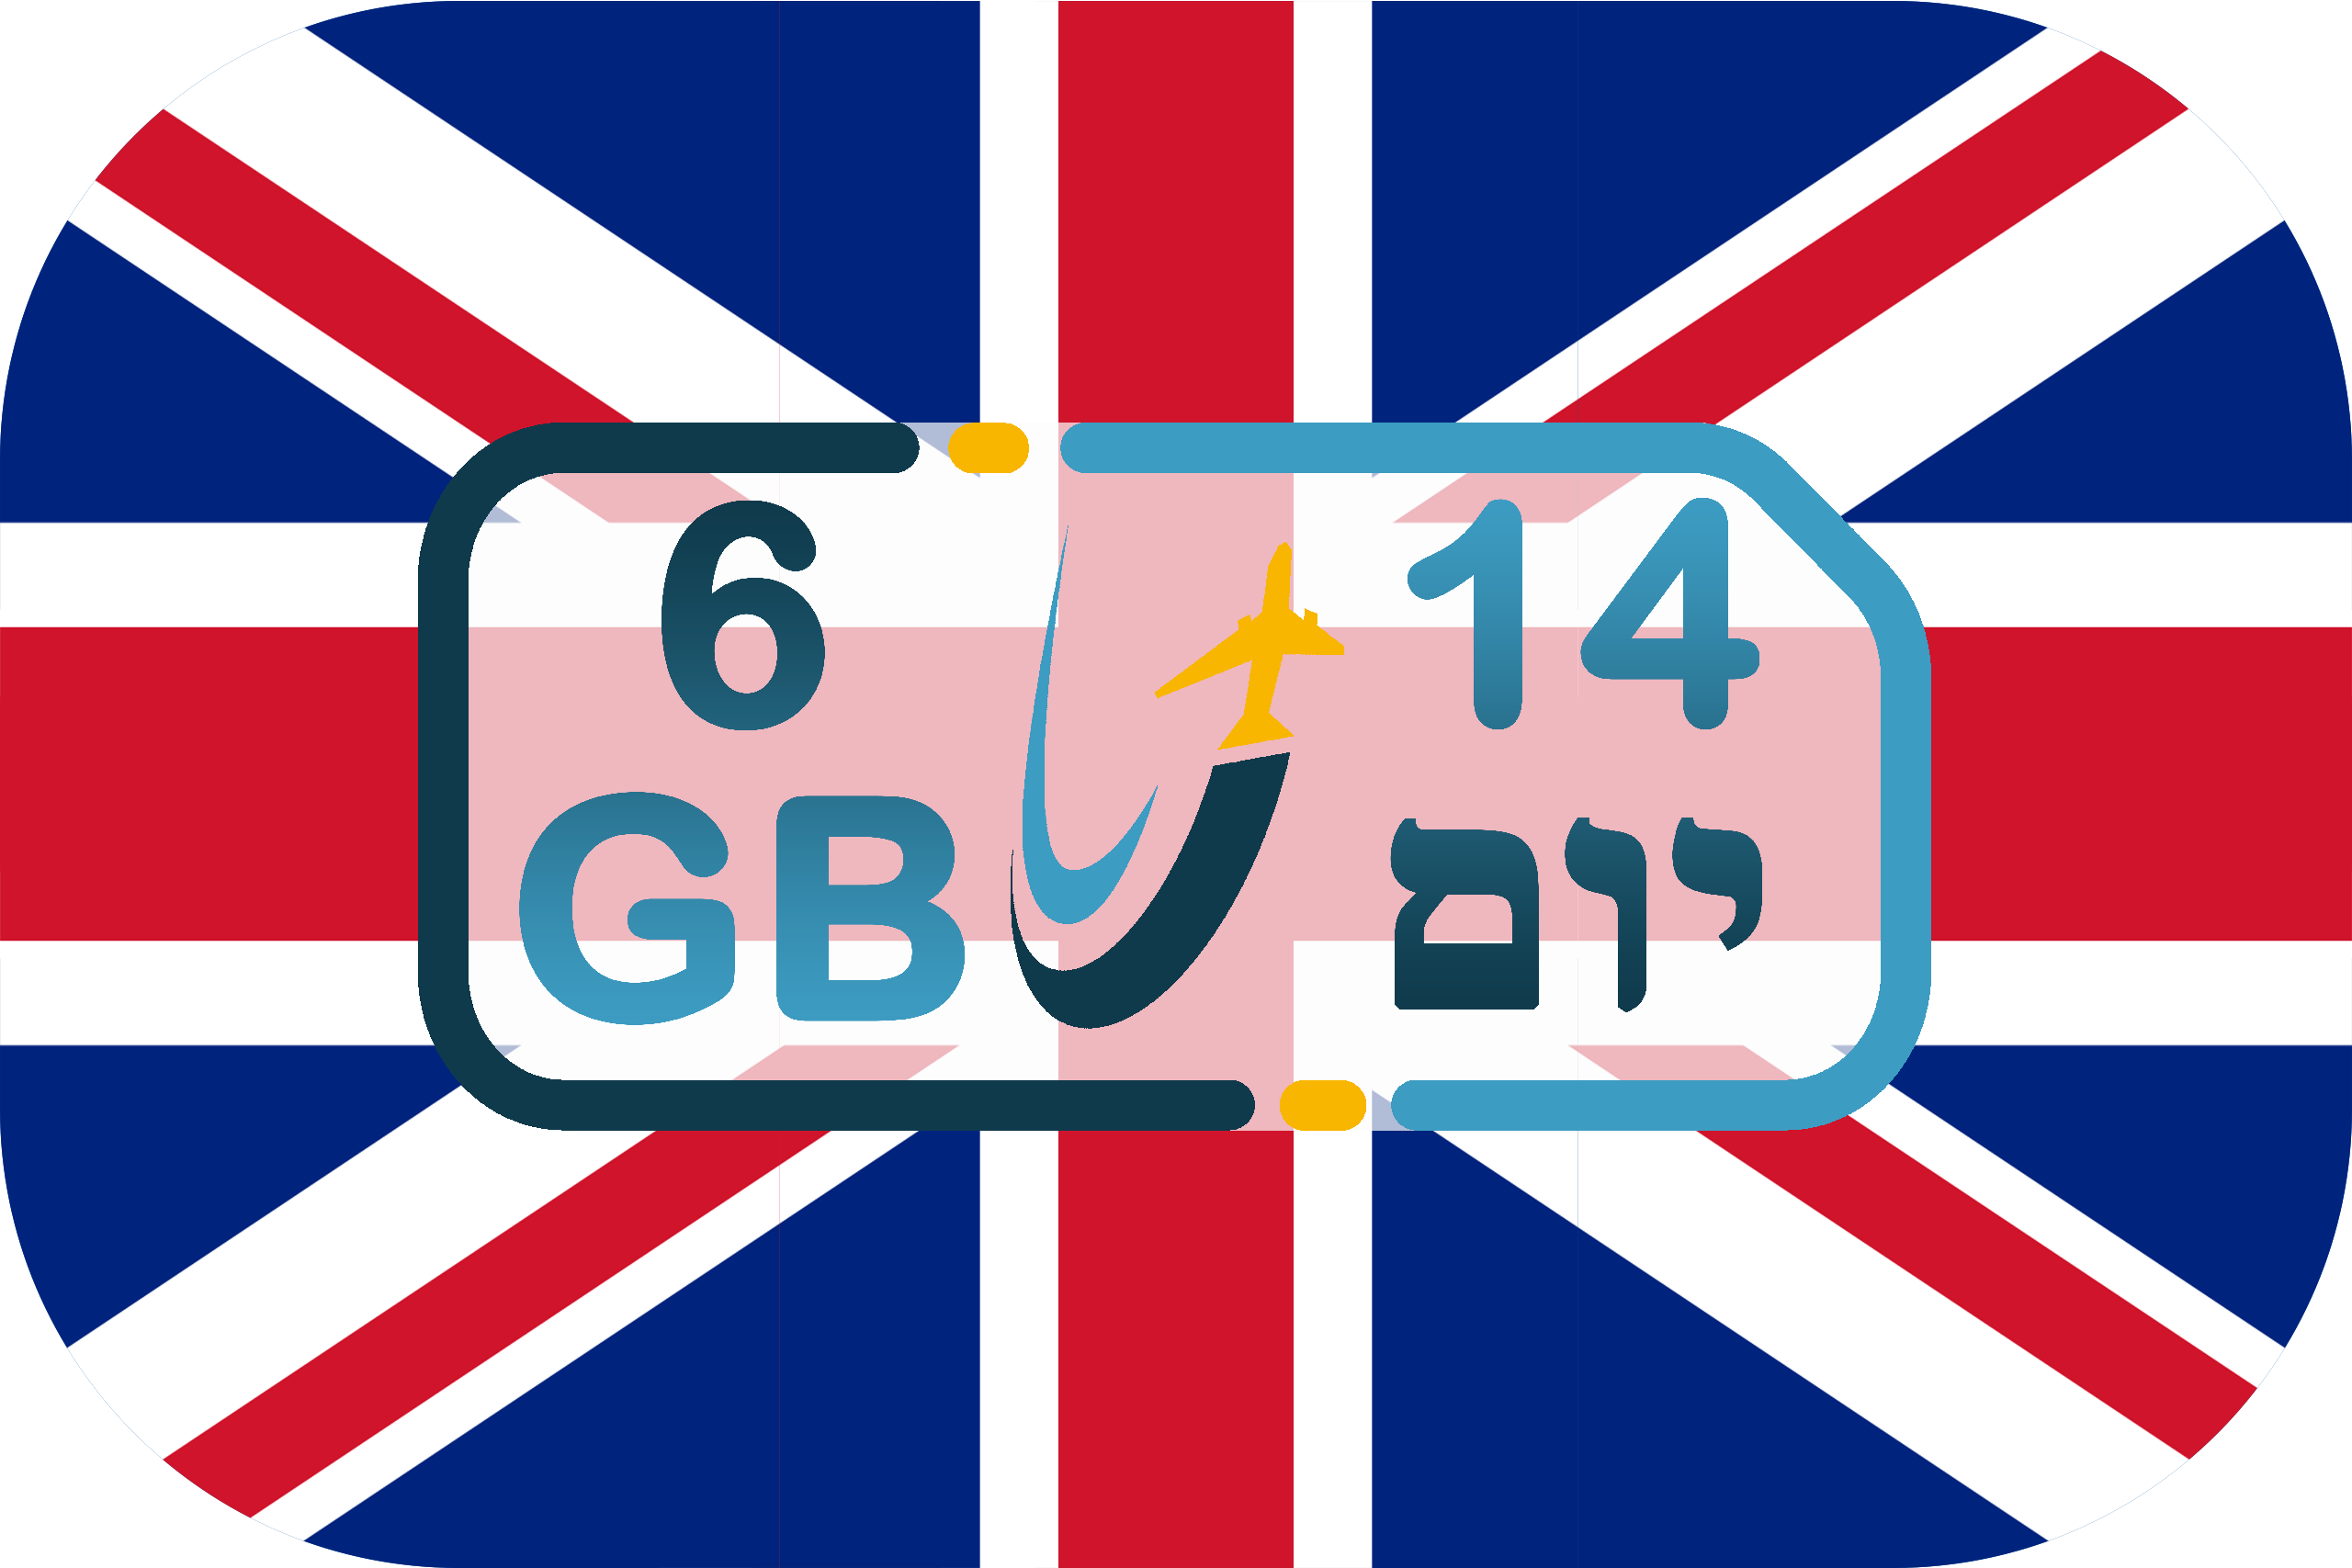 כרטיס סים באנגליה – גלישה 6GB (בתוקף ל- 14 יום)